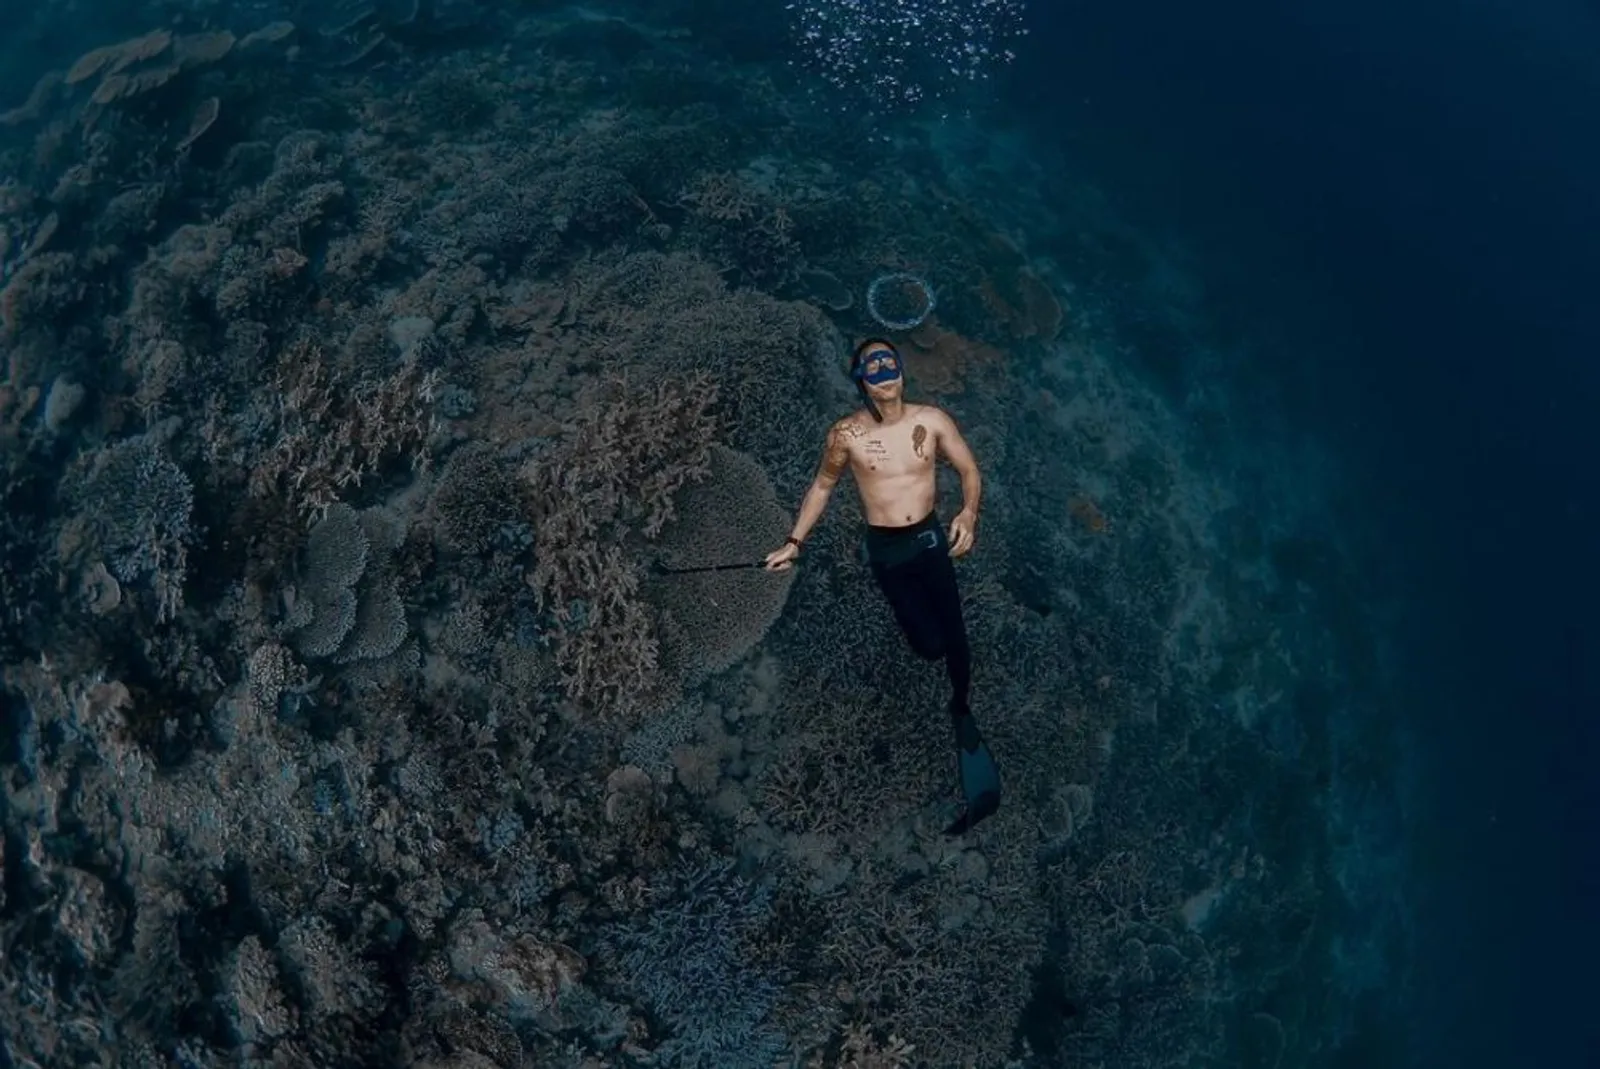 Hobi Free Diving, 9 Potret Keren Dikta 'Yovie and Nuno' di Bawah Laut